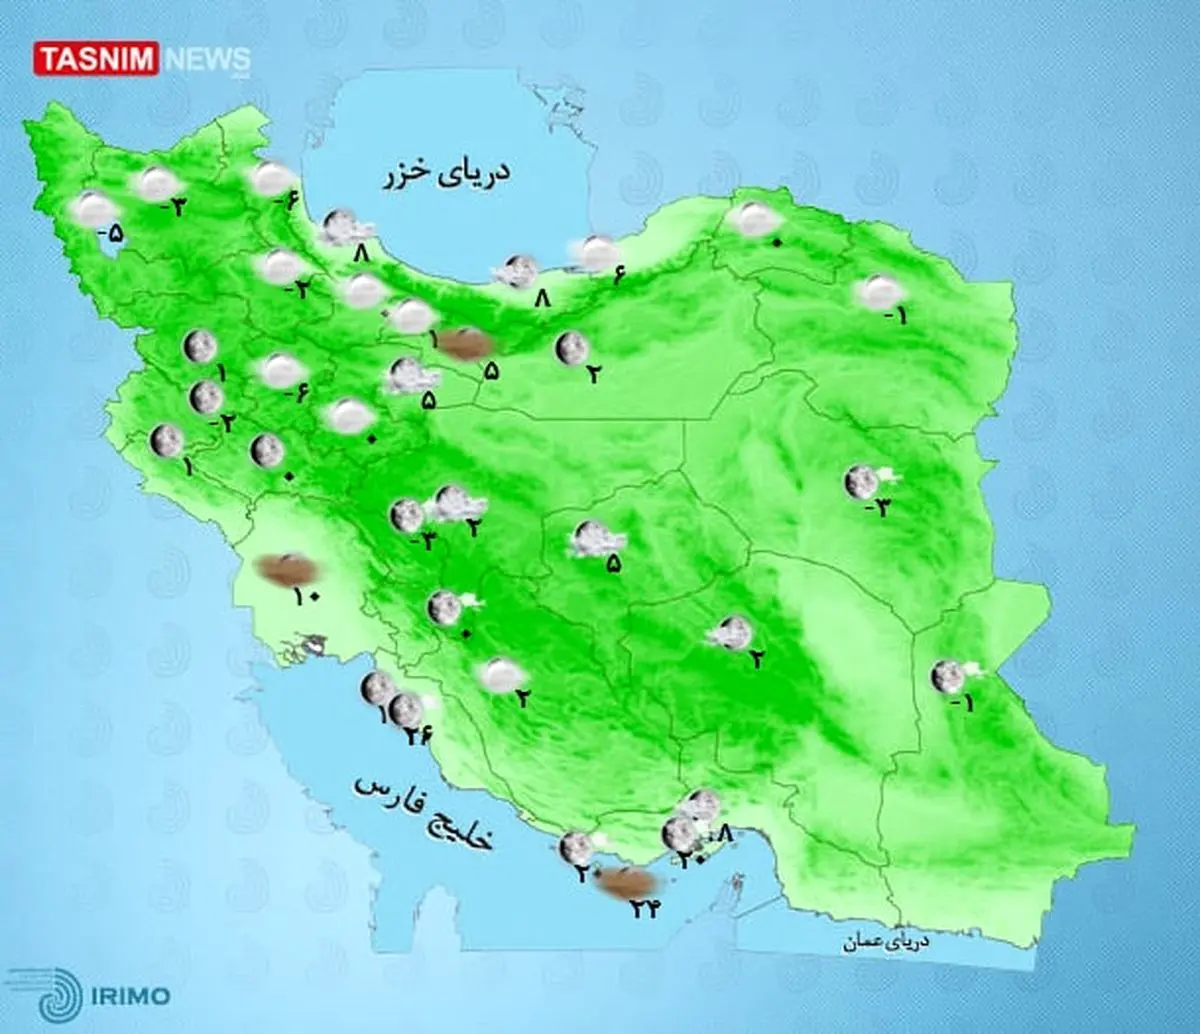 هشدار جدی هواشناسی برای کاهش دما | تهران برفی میشود؟